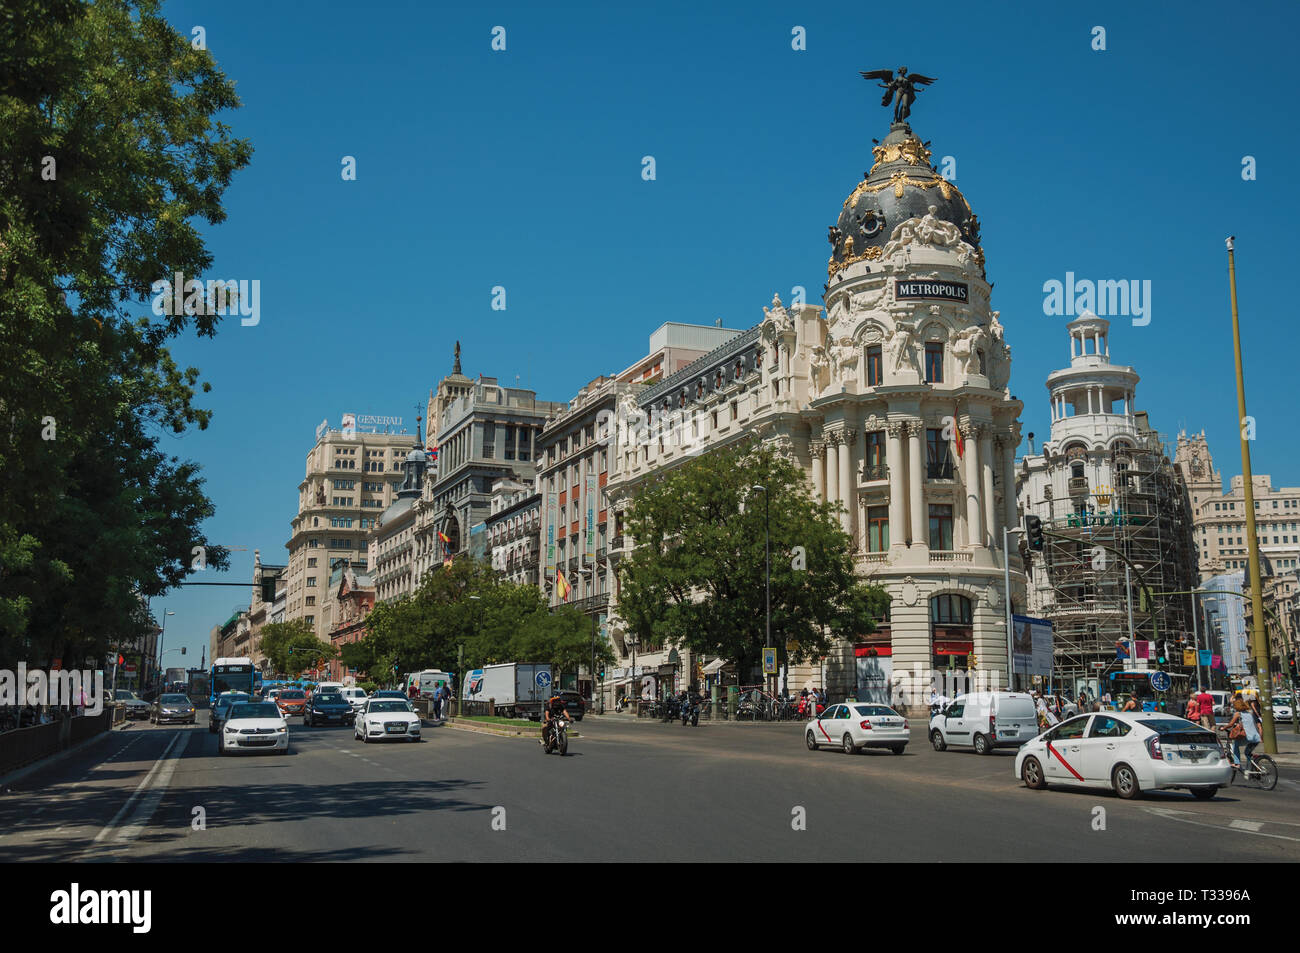 Les vieux bâtiments sur l'animée rue Alcala avec les gens et les voitures, dans une journée ensoleillée à Madrid. Capitale de l'Espagne avec dynamisme et vie culturelle intense. Banque D'Images